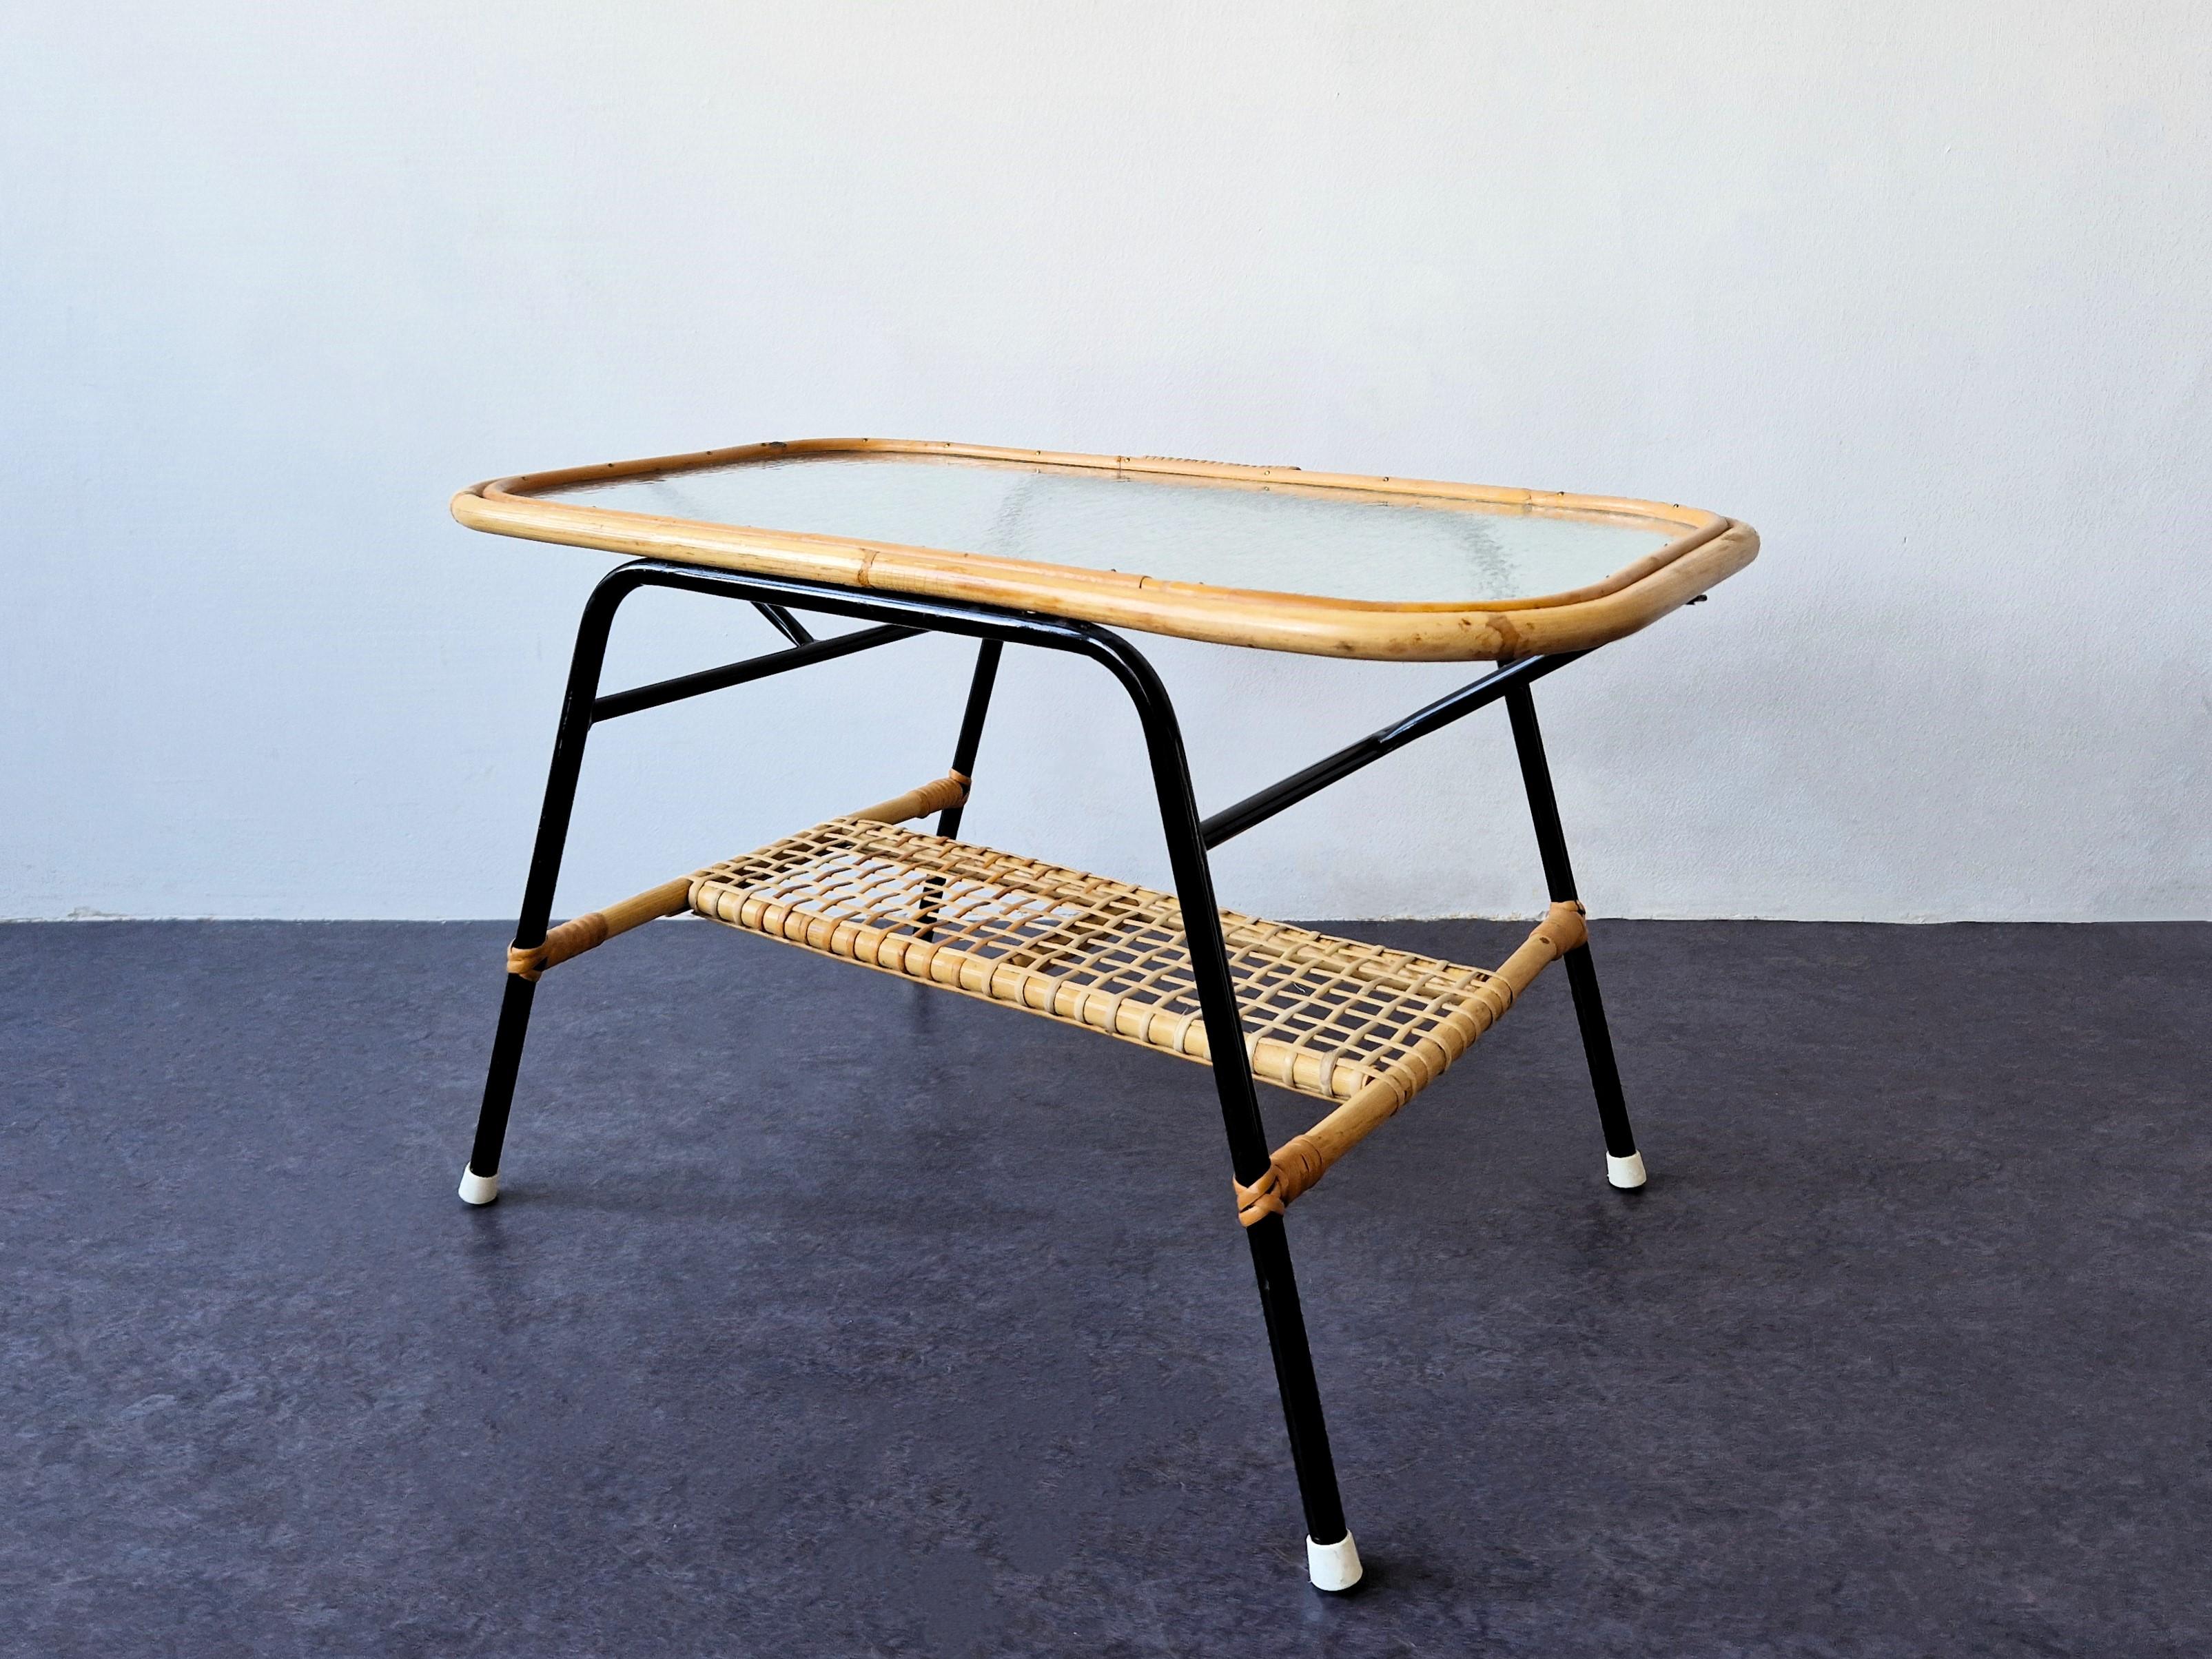 Cette table basse a été conçue pour Rohé Noordwolde aux Pays-Bas dans les années 1950. La table est composée d'une base en métal laqué noir et d'un plateau rectangulaire en rotin et verre nuageux. Le cadre laqué noir offre un beau contraste avec le